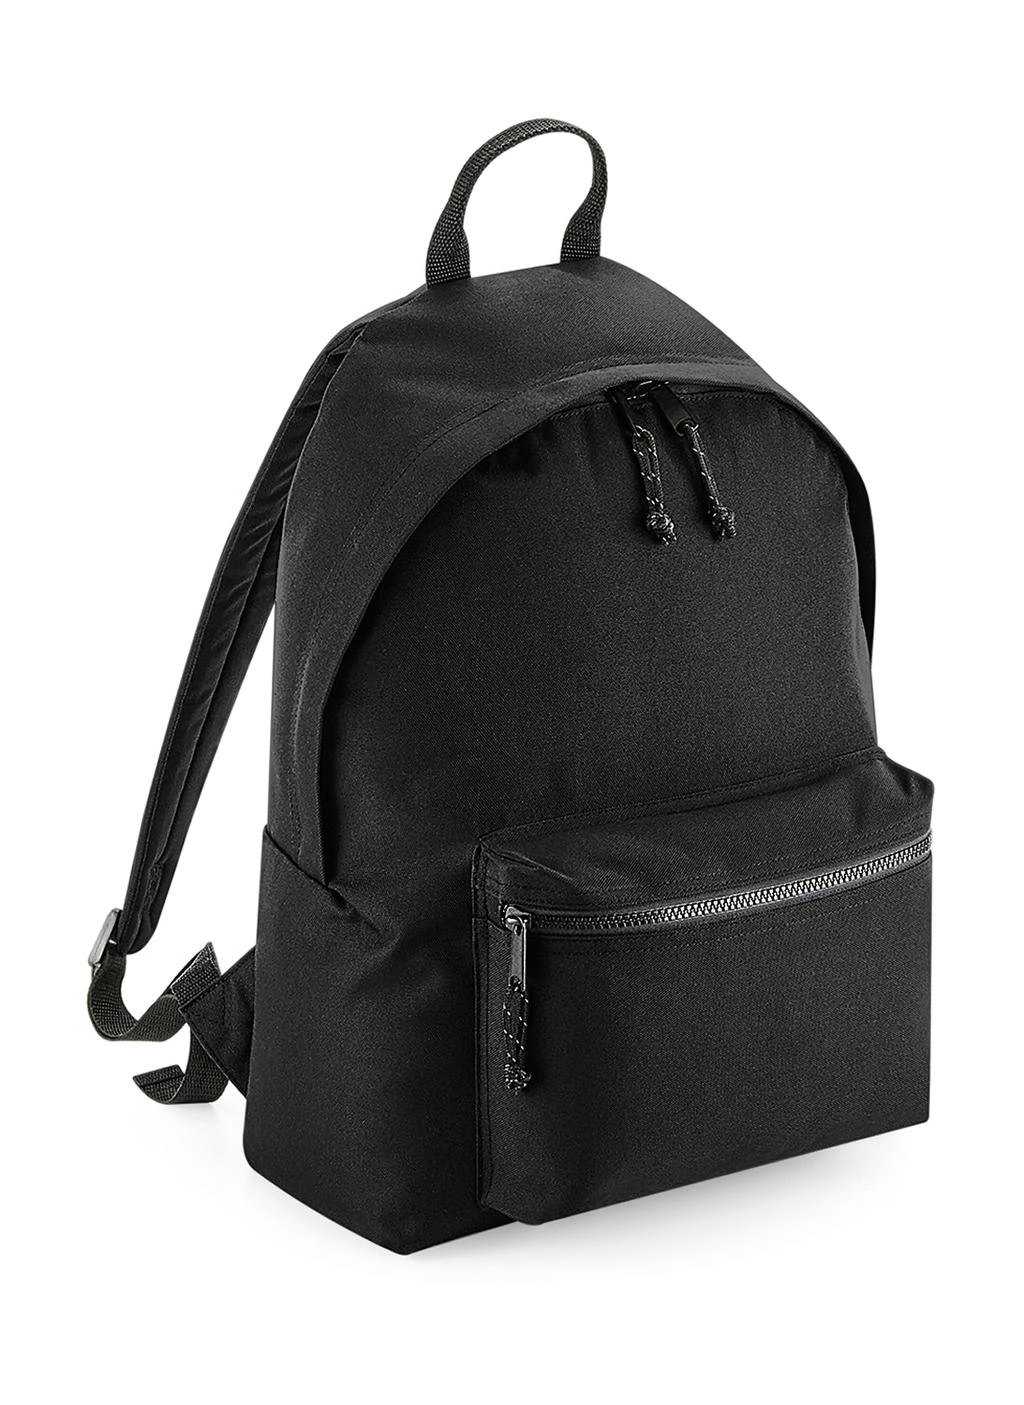 Recycled Backpack zum Besticken und Bedrucken in der Farbe Black mit Ihren Logo, Schriftzug oder Motiv.